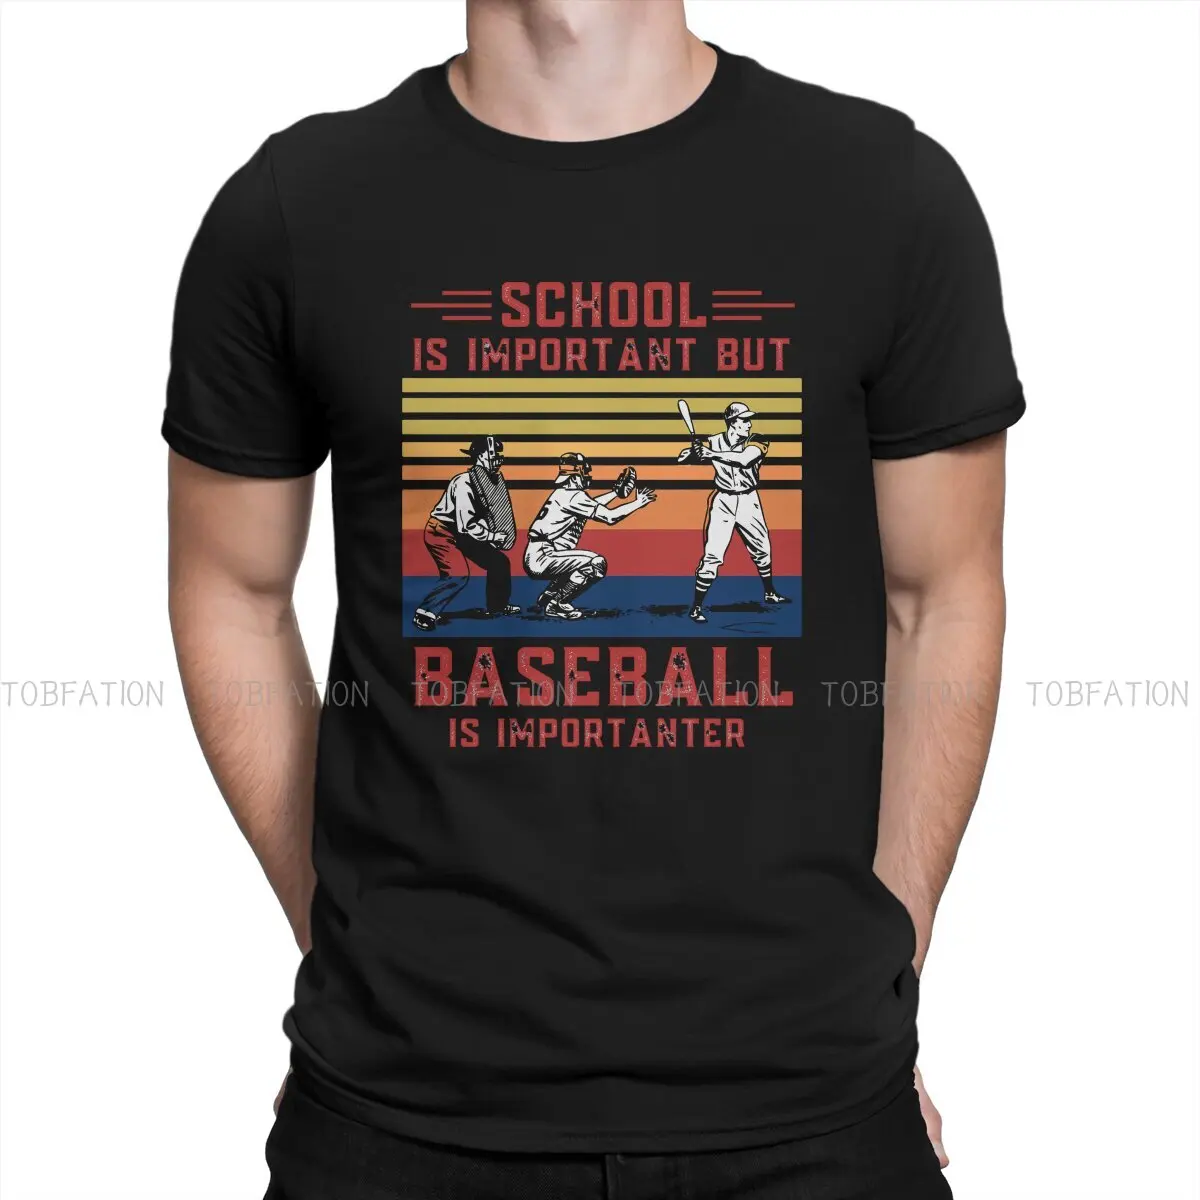 

Бейсбольная Спортивная новейшая футболка для мужчин, школа важна, но Бейсбол имеет значение, Классическая футболка из чистого хлопка с круг...